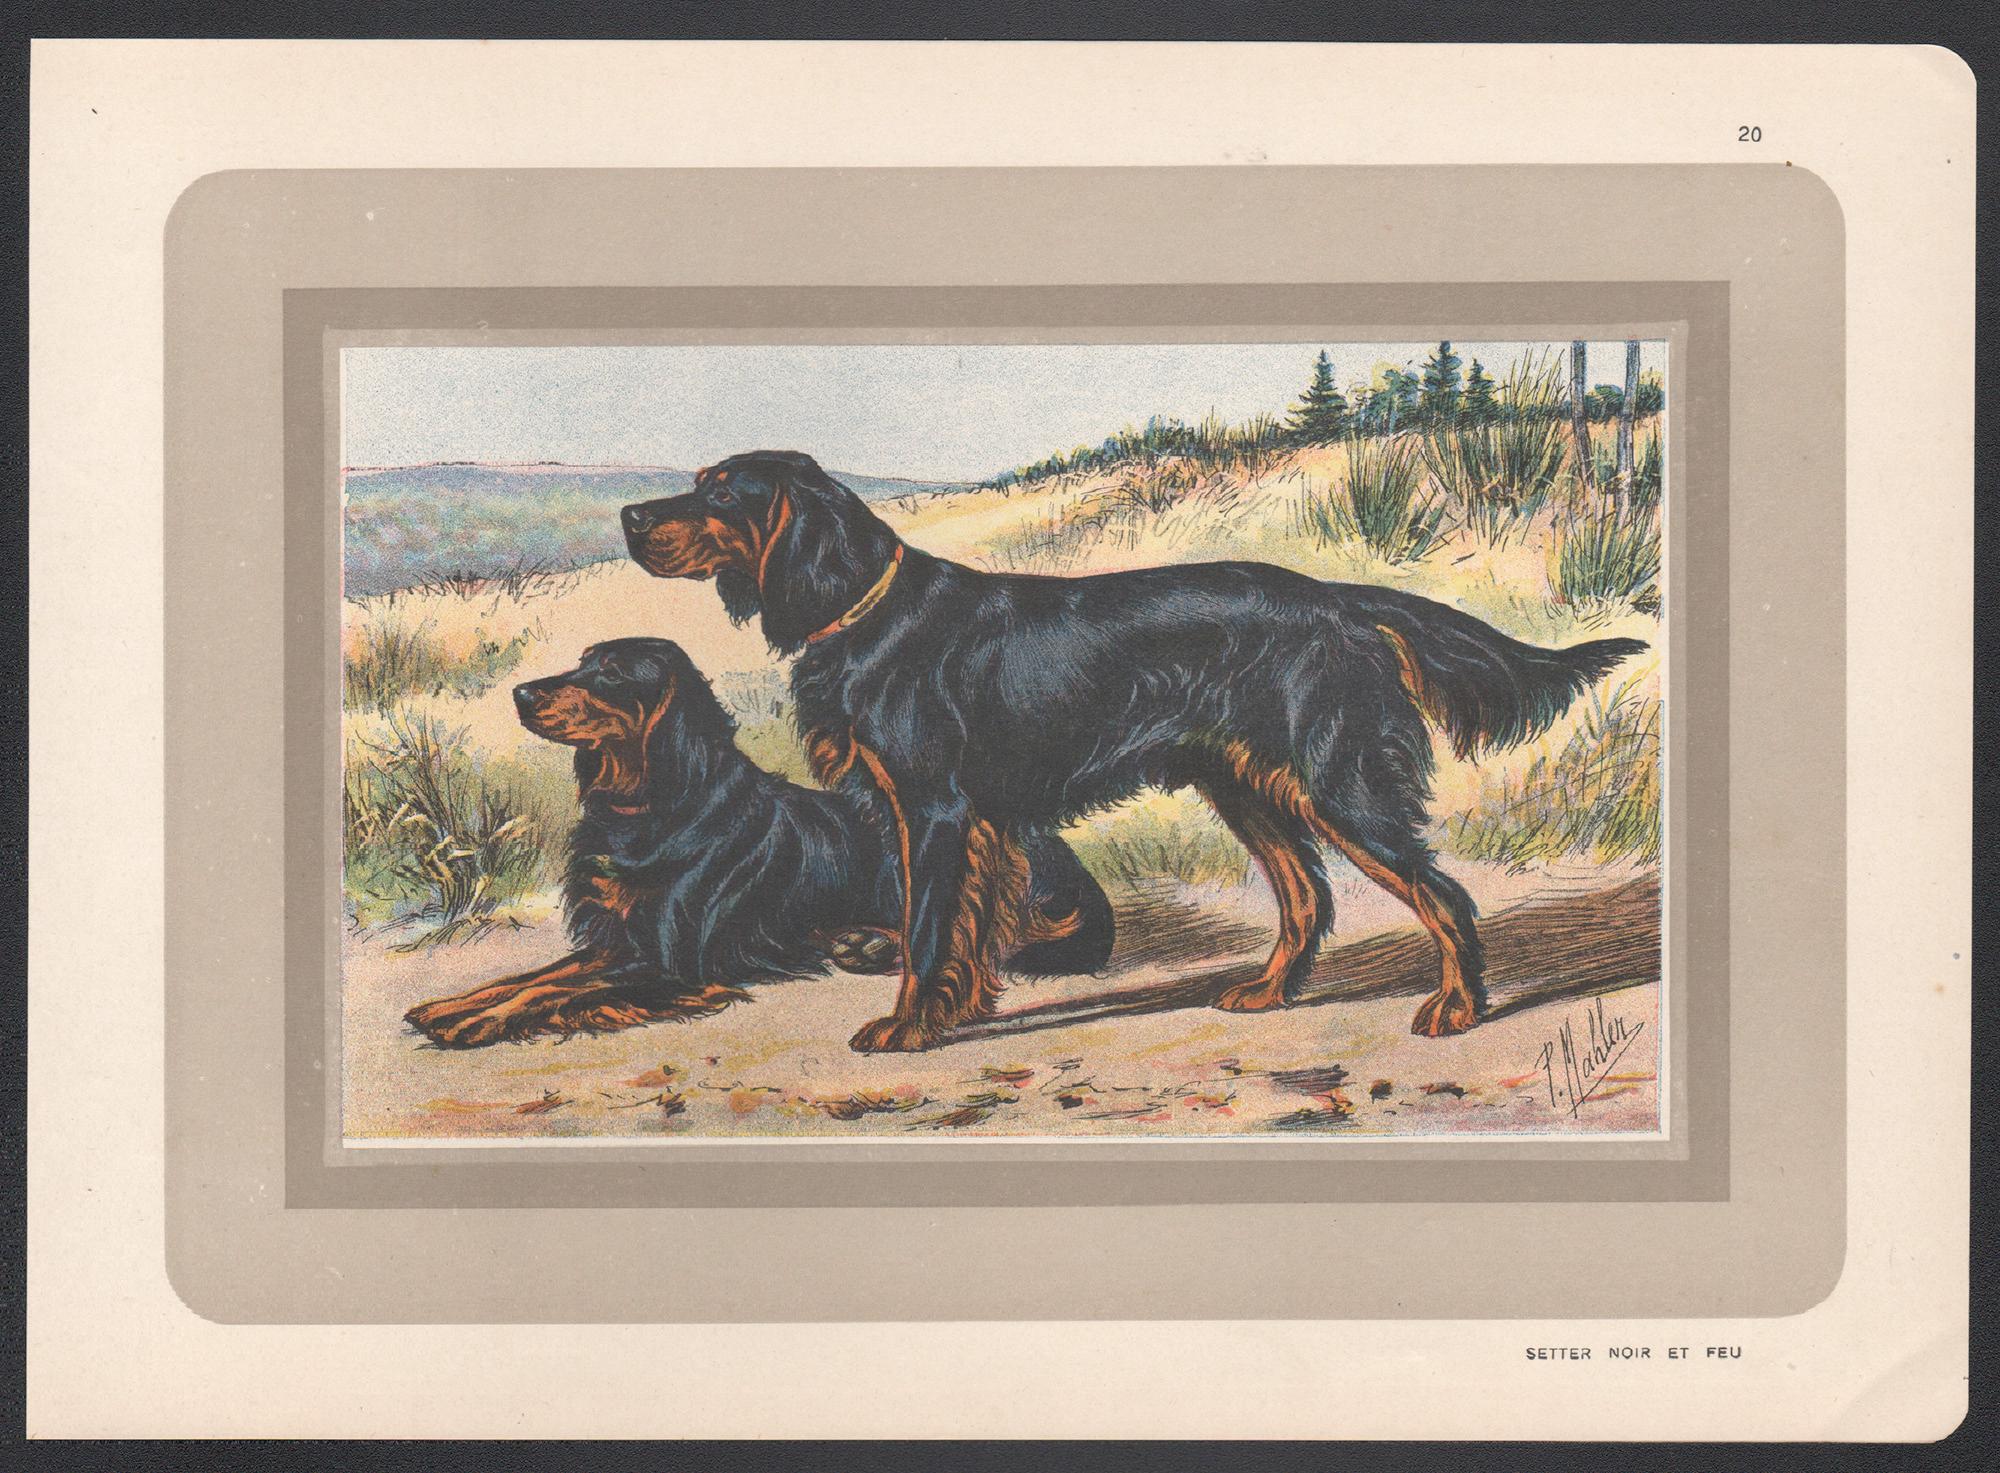 Gordon Setter, impression chromolithographie d'un chien de chasse français, années 1930 - Print de P. Mahler